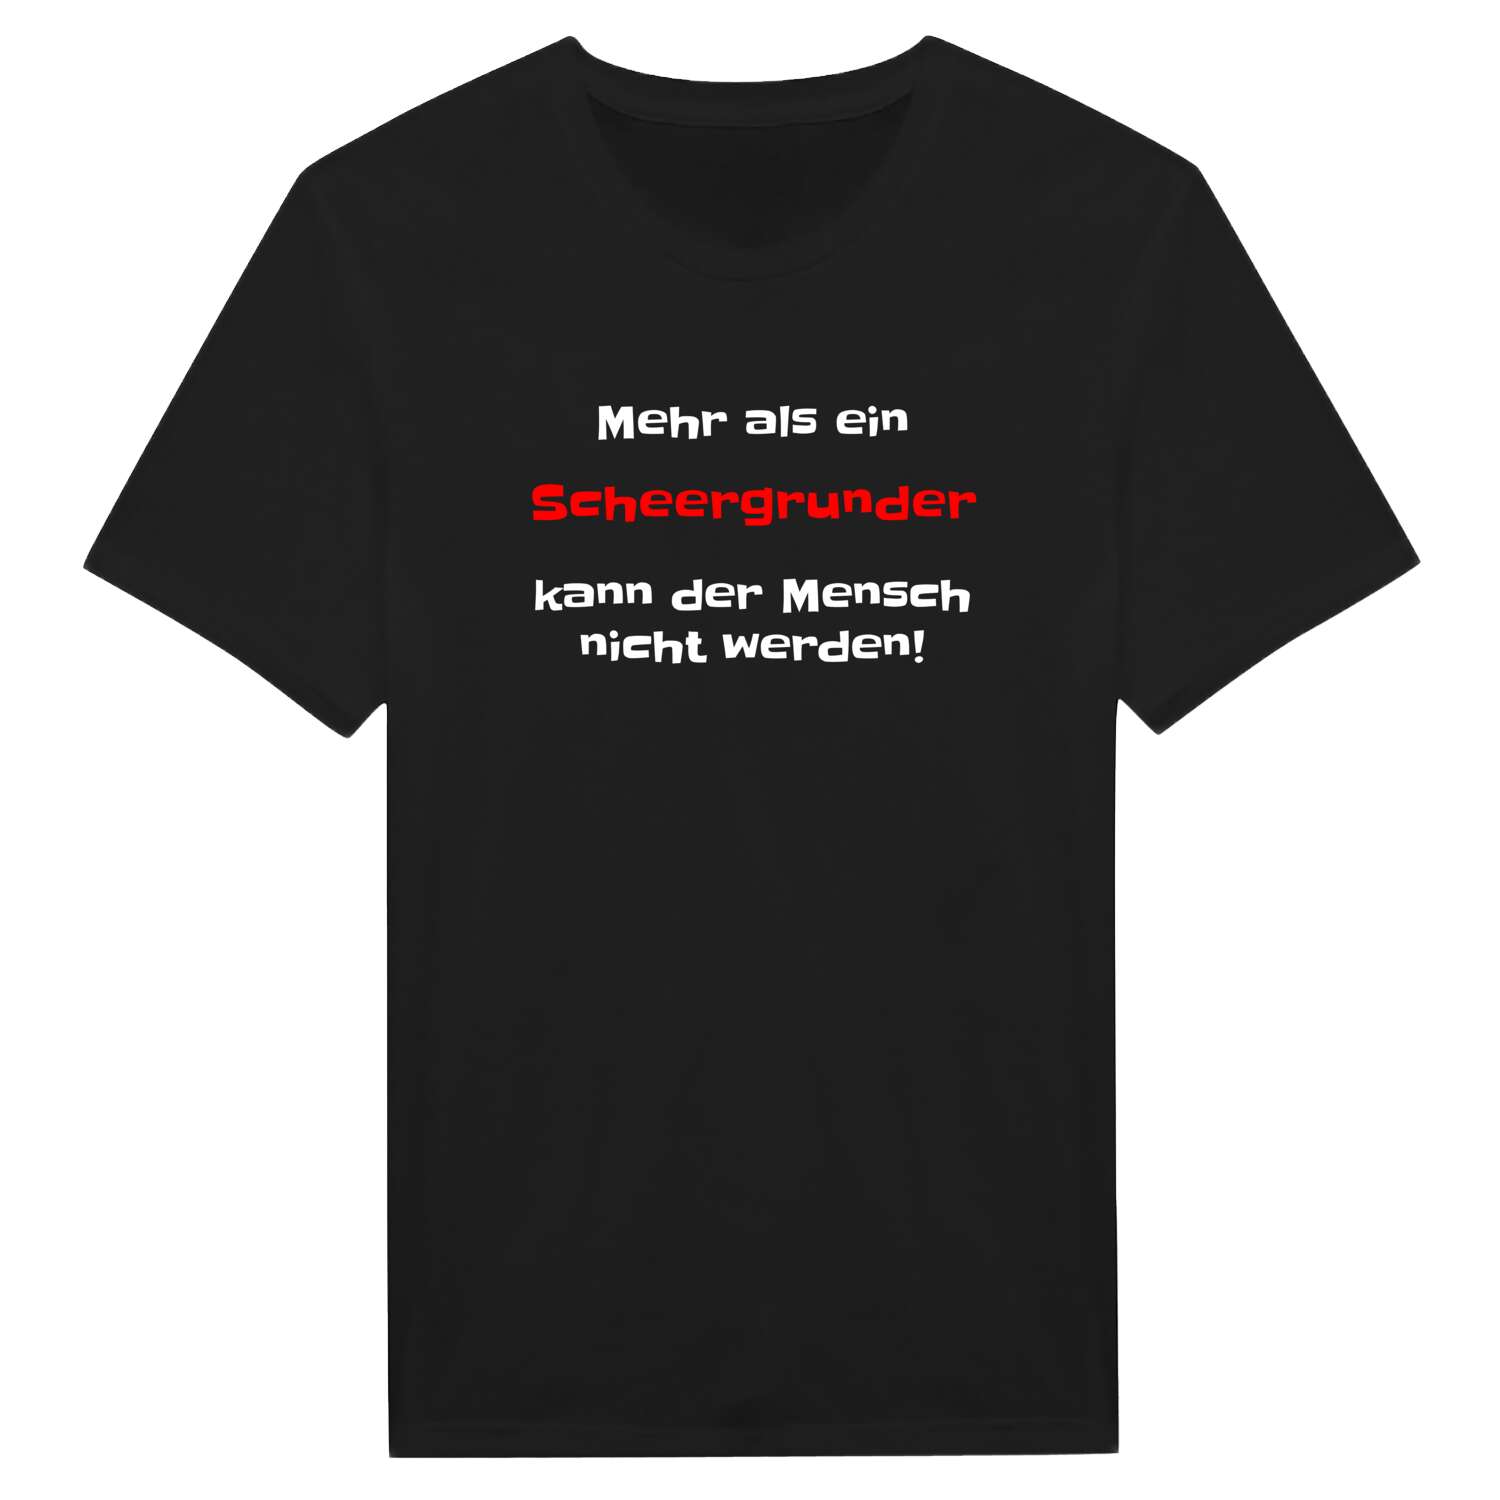 Scheergrund T-Shirt »Mehr als ein«